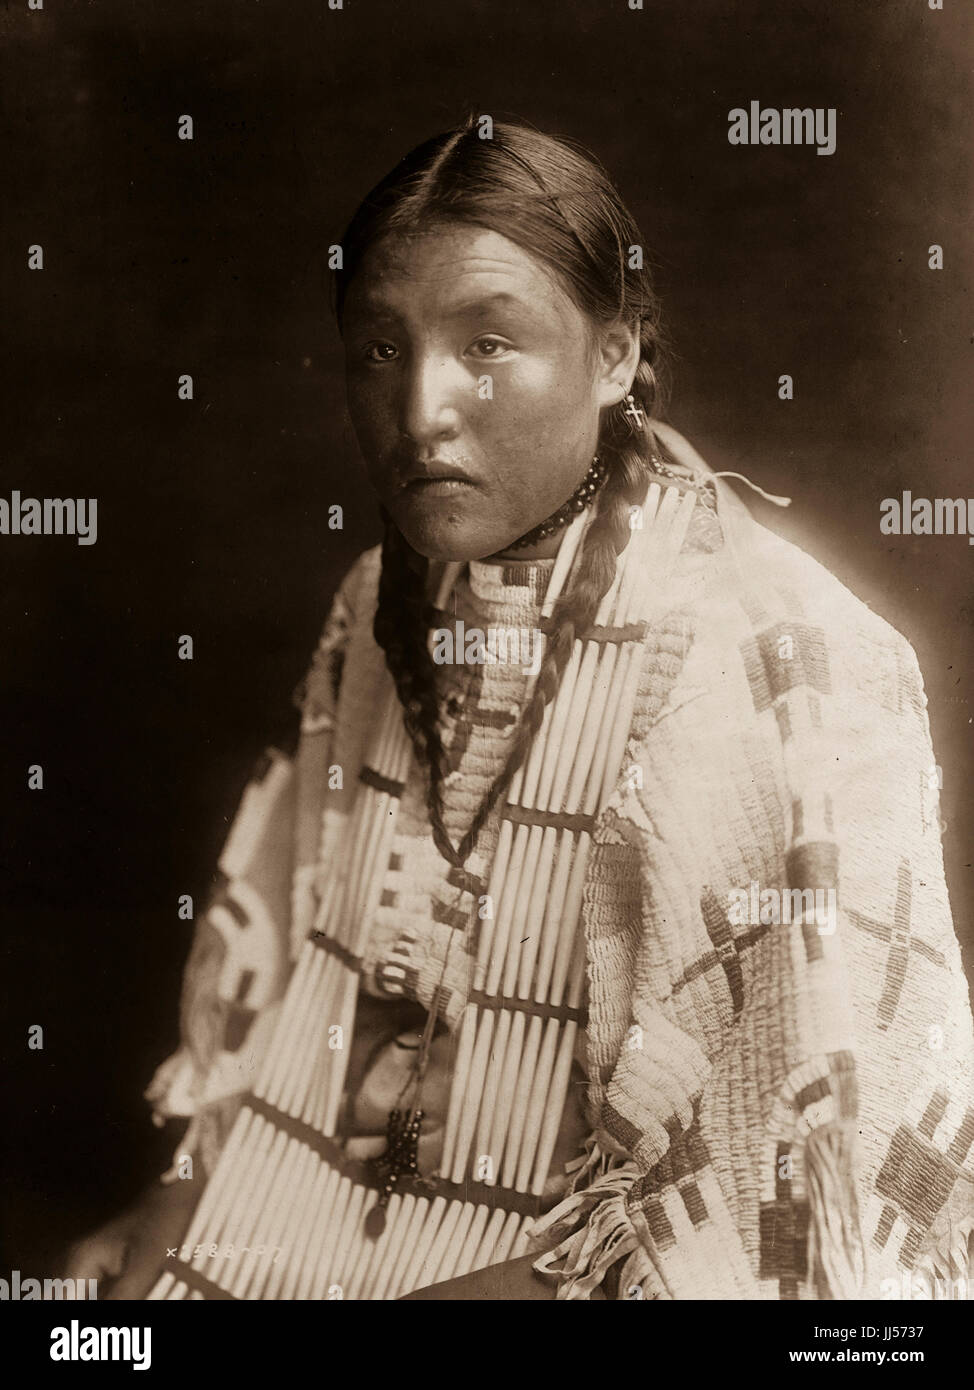 Die Porträts und Landschaften von Edward S. Curtis 1868 - 1952-Fokus auf den indianischen Stämmen des Pazifischen Nordwestens. Fotografien von Edward Sheriff Curtis. Stockfoto